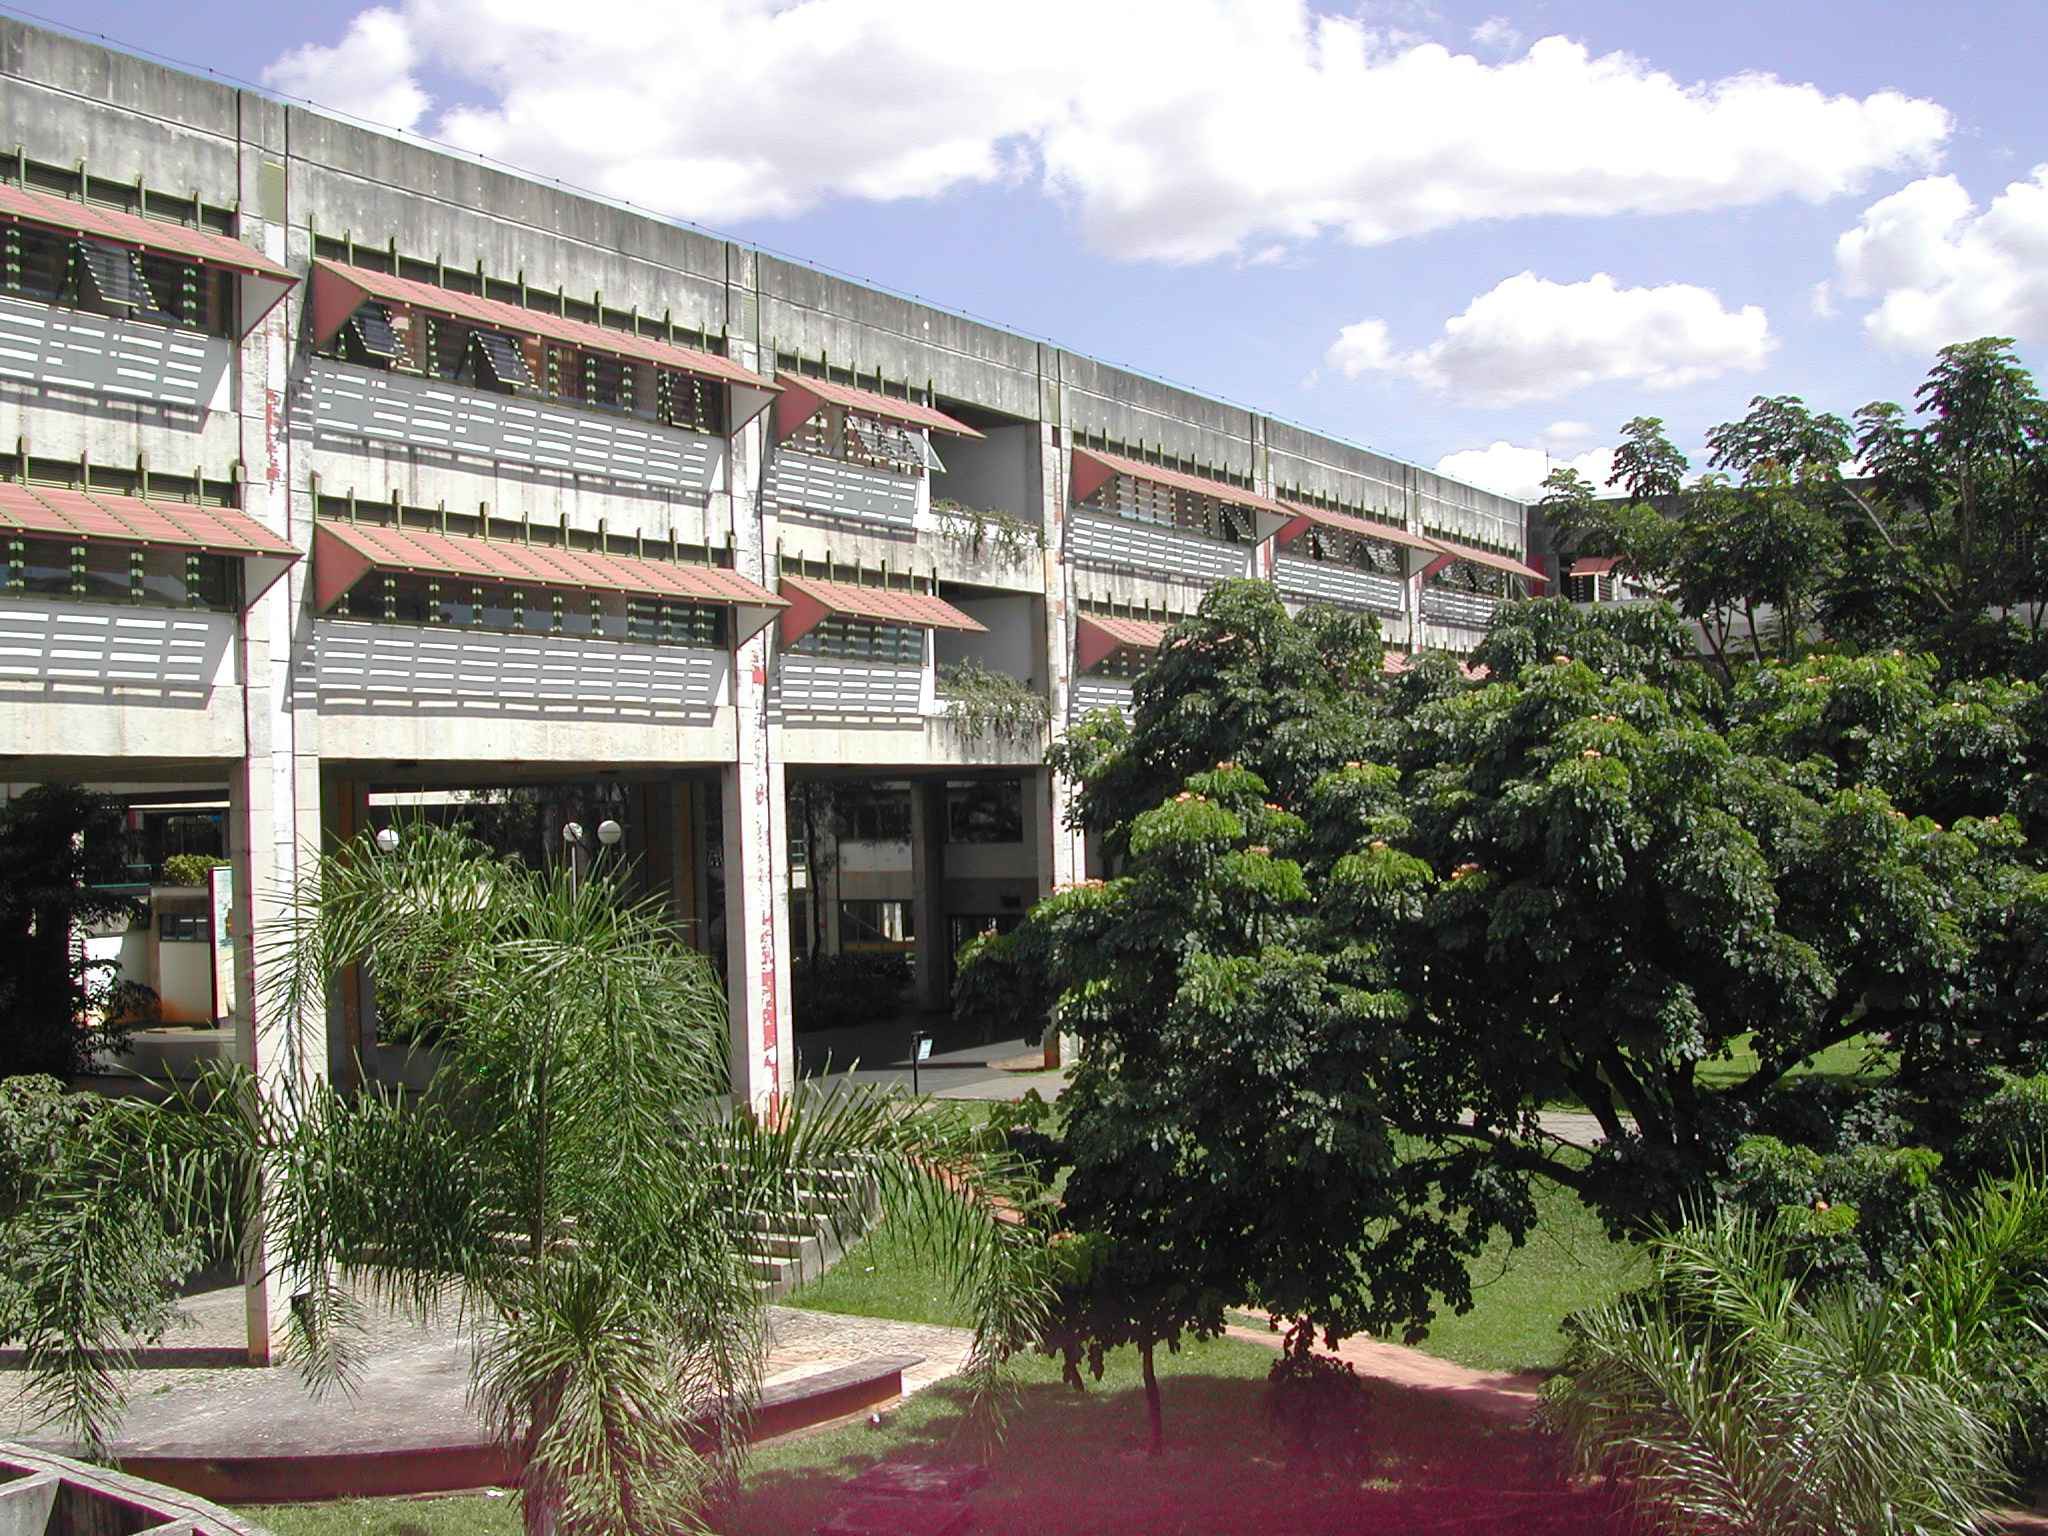 Prédio da Fafich no campus Pampulha, onde a unidade está instalada desde 1990